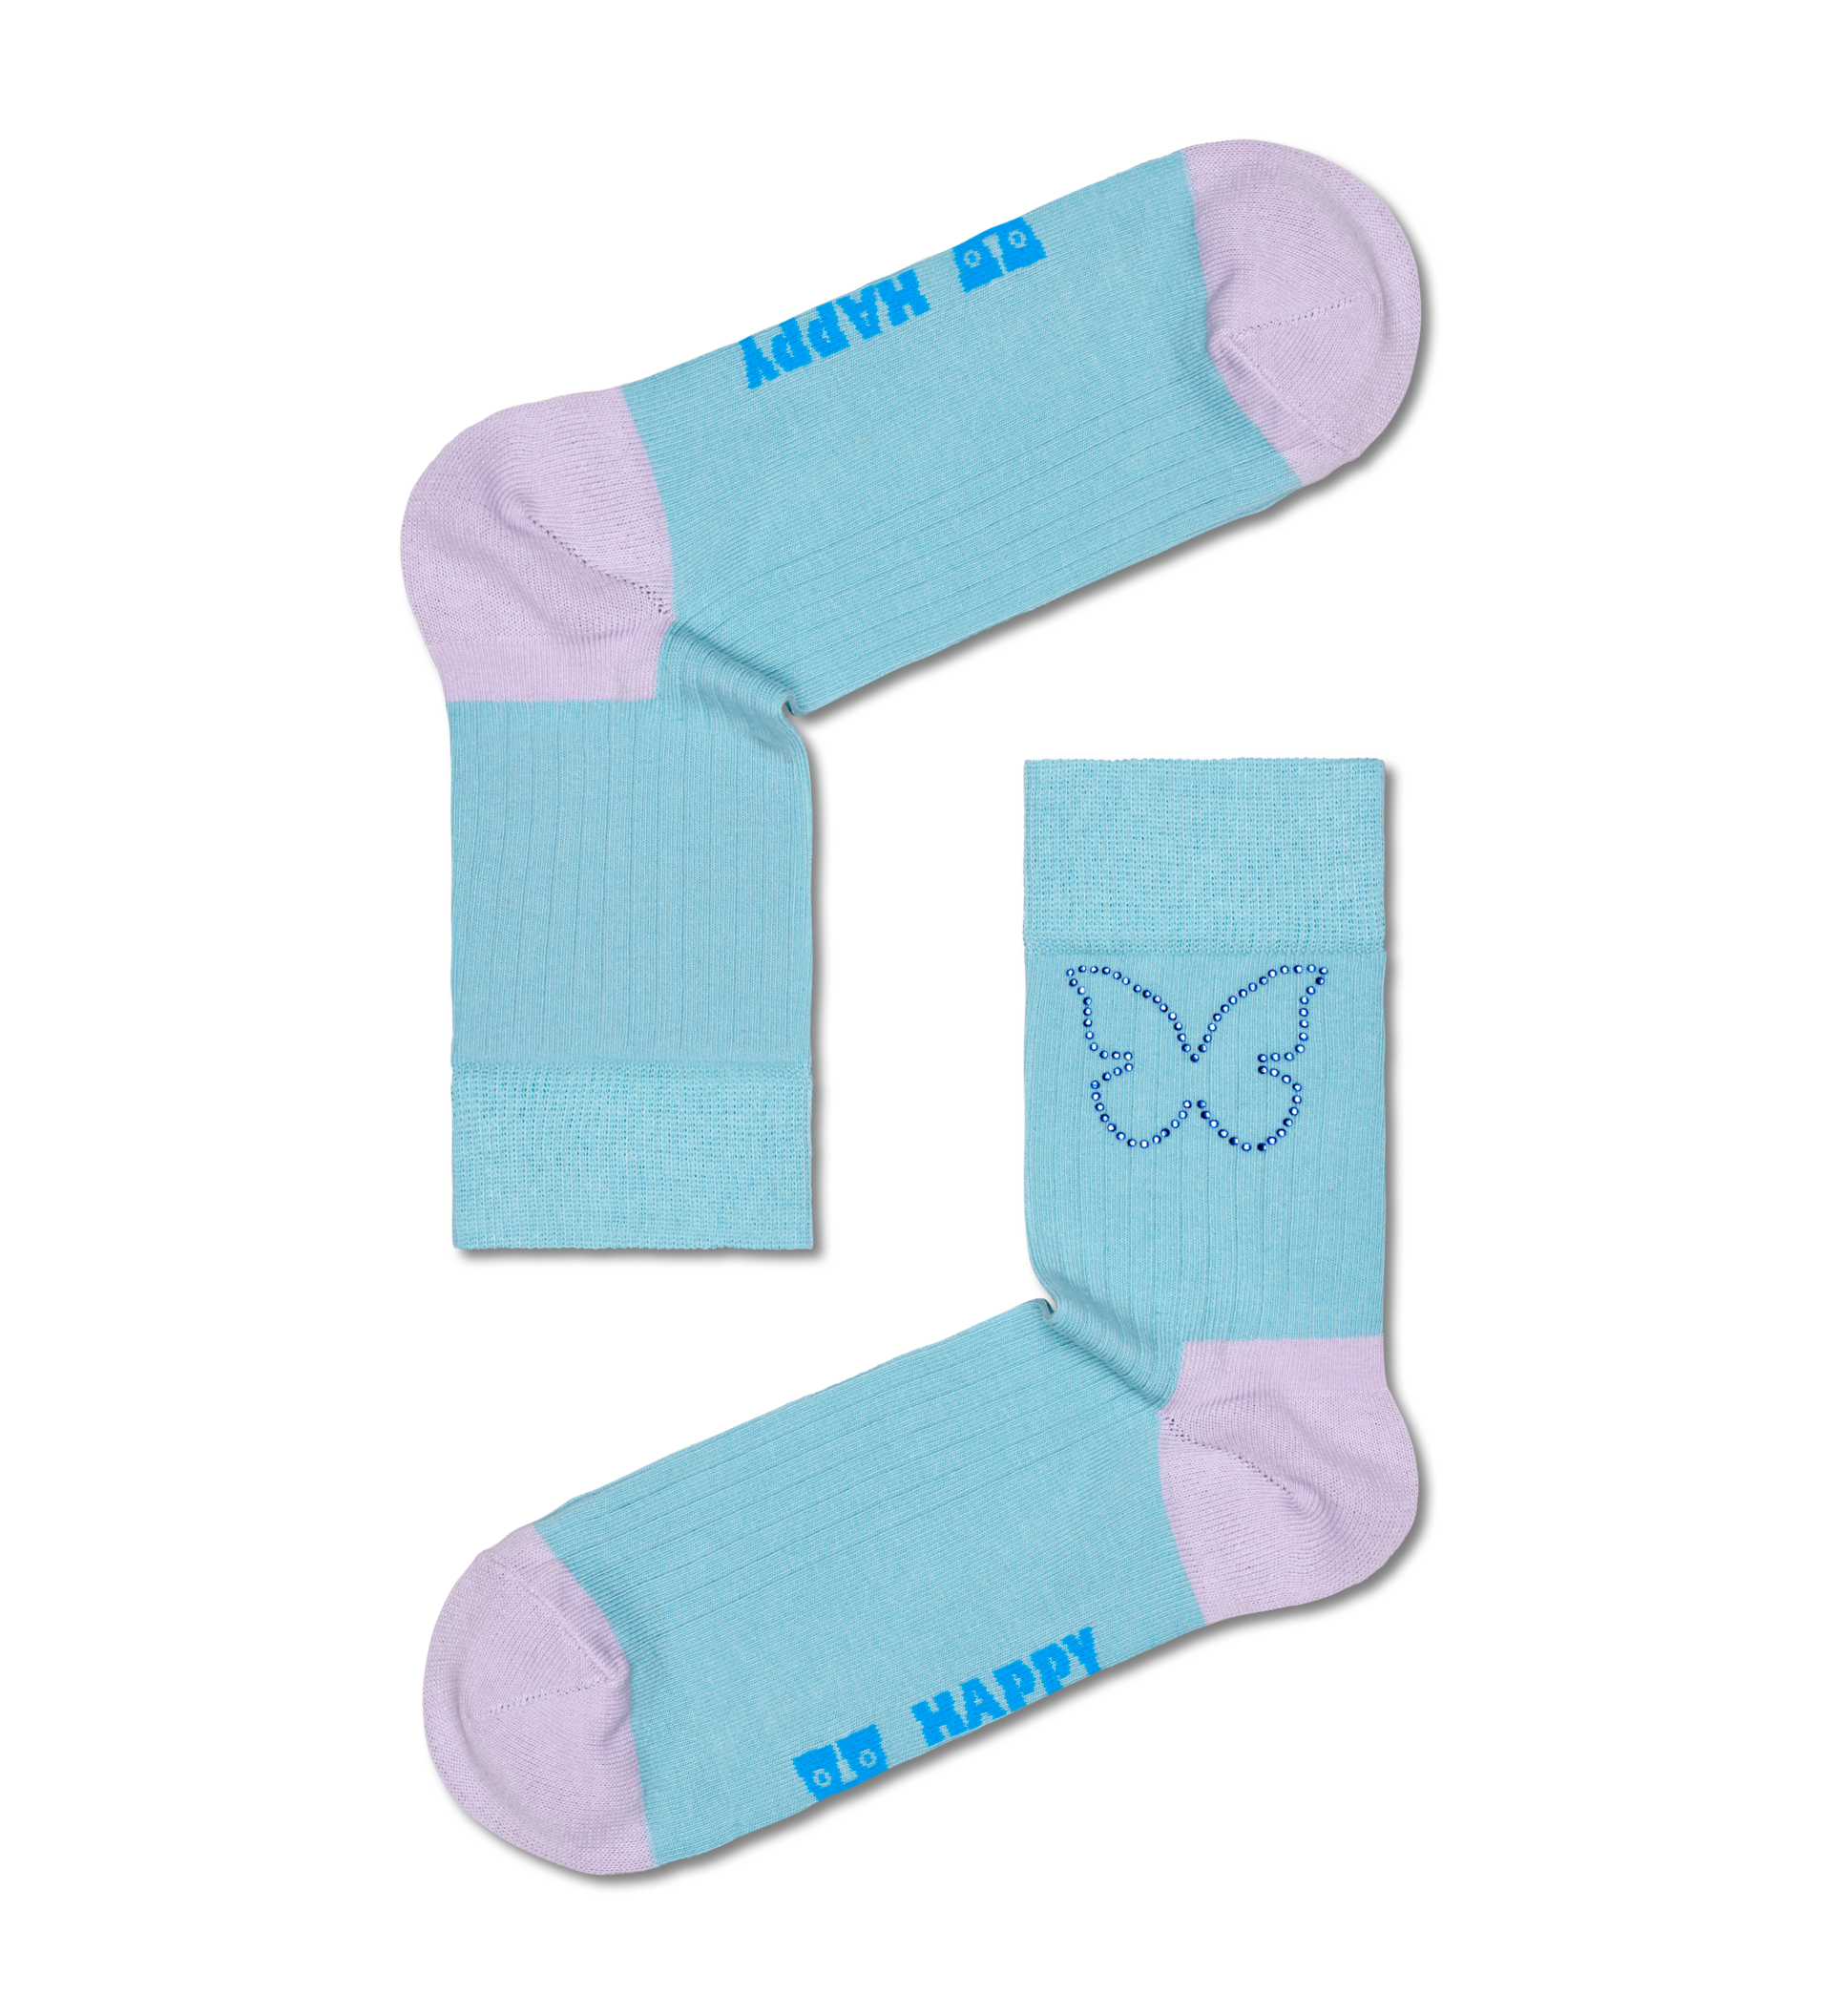 Tilbud: Butterfly Rhinestone 1/2 Crew Sock kr 11,2 på Happy Socks